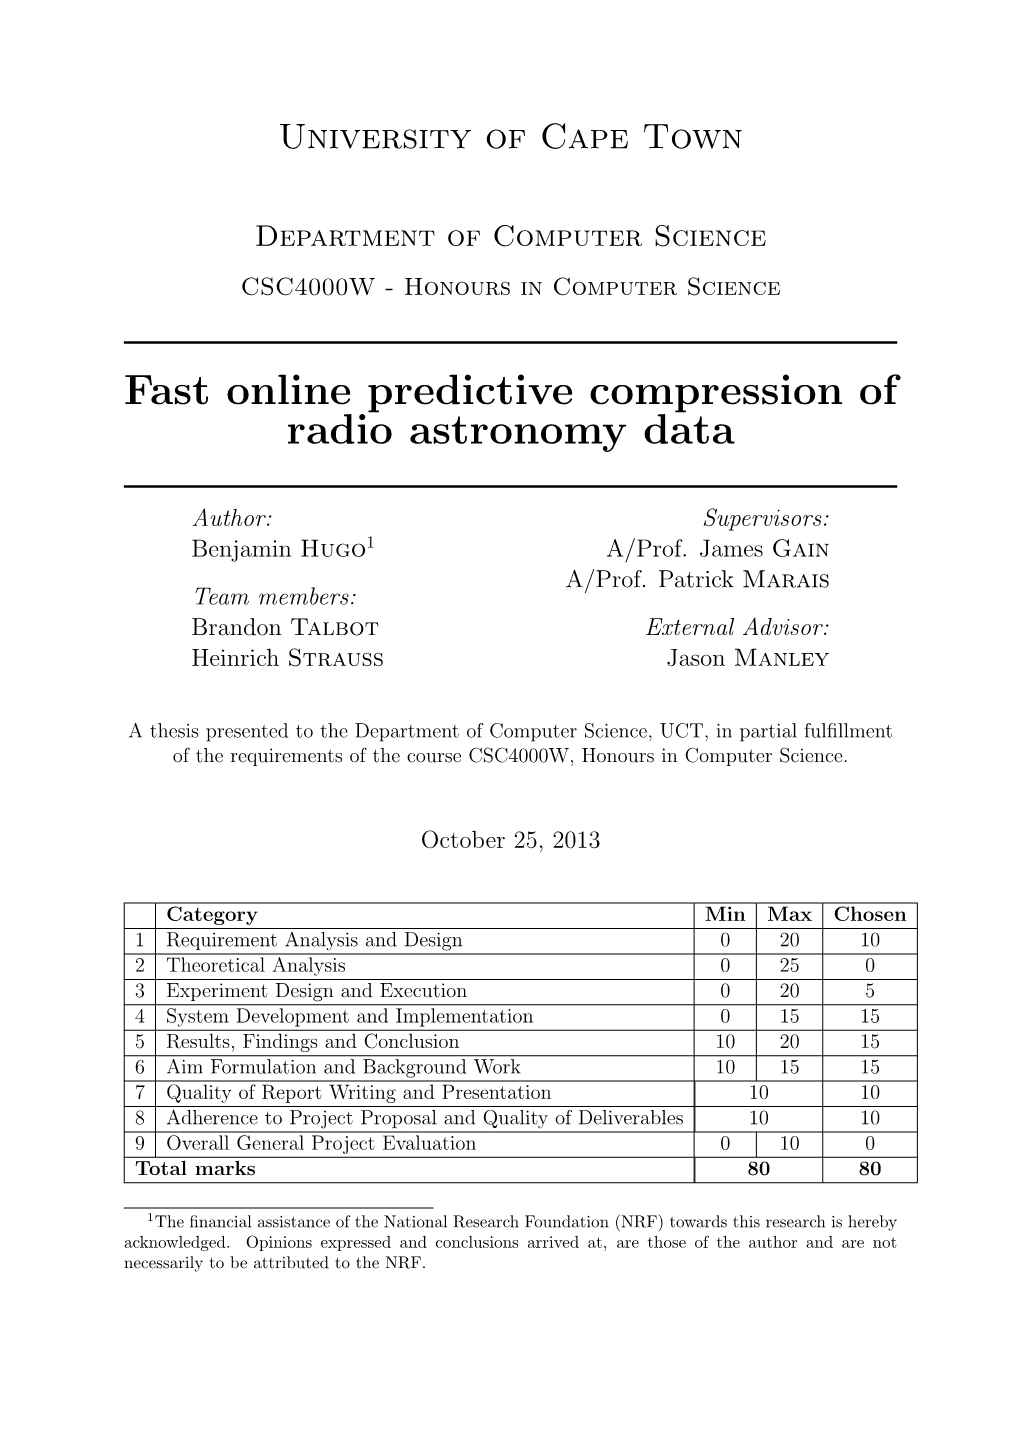 Fast Online Predictive Compression of Radio Astronomy Data